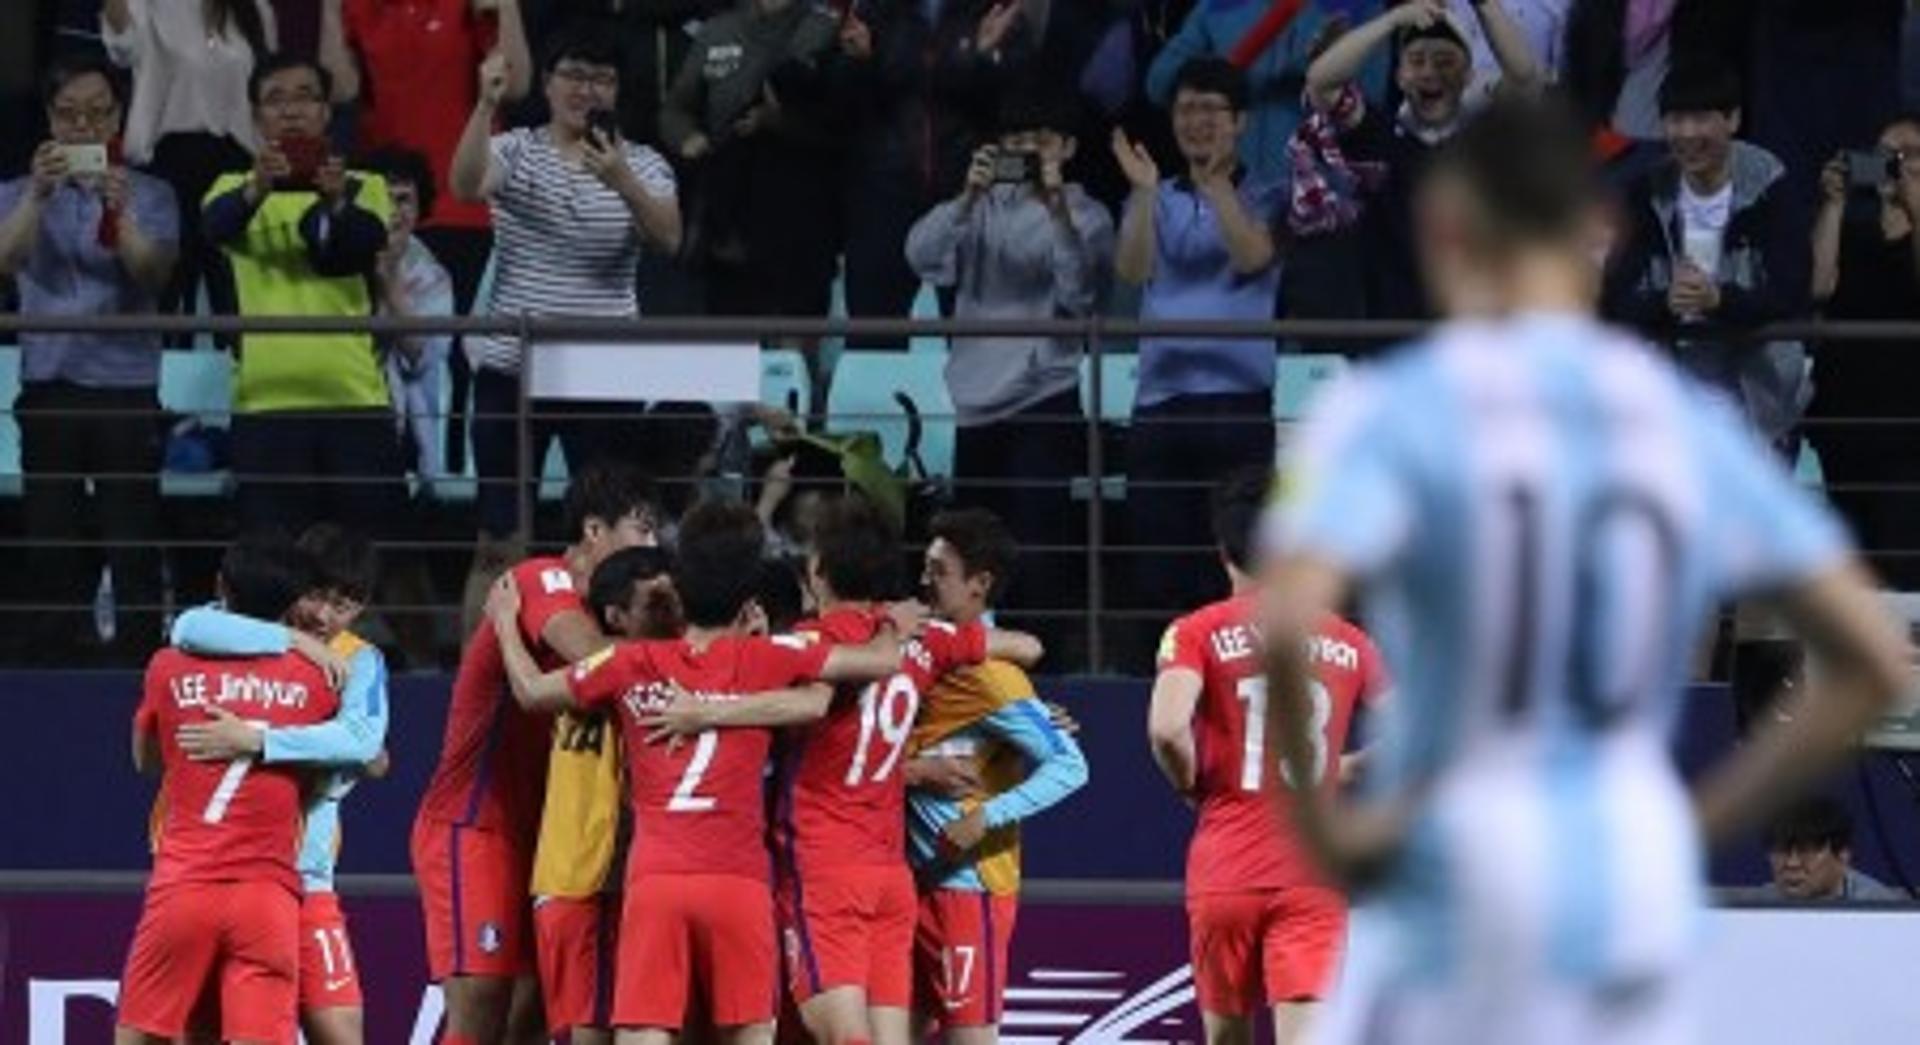 Coreia do Sul celebra vitória e classificação